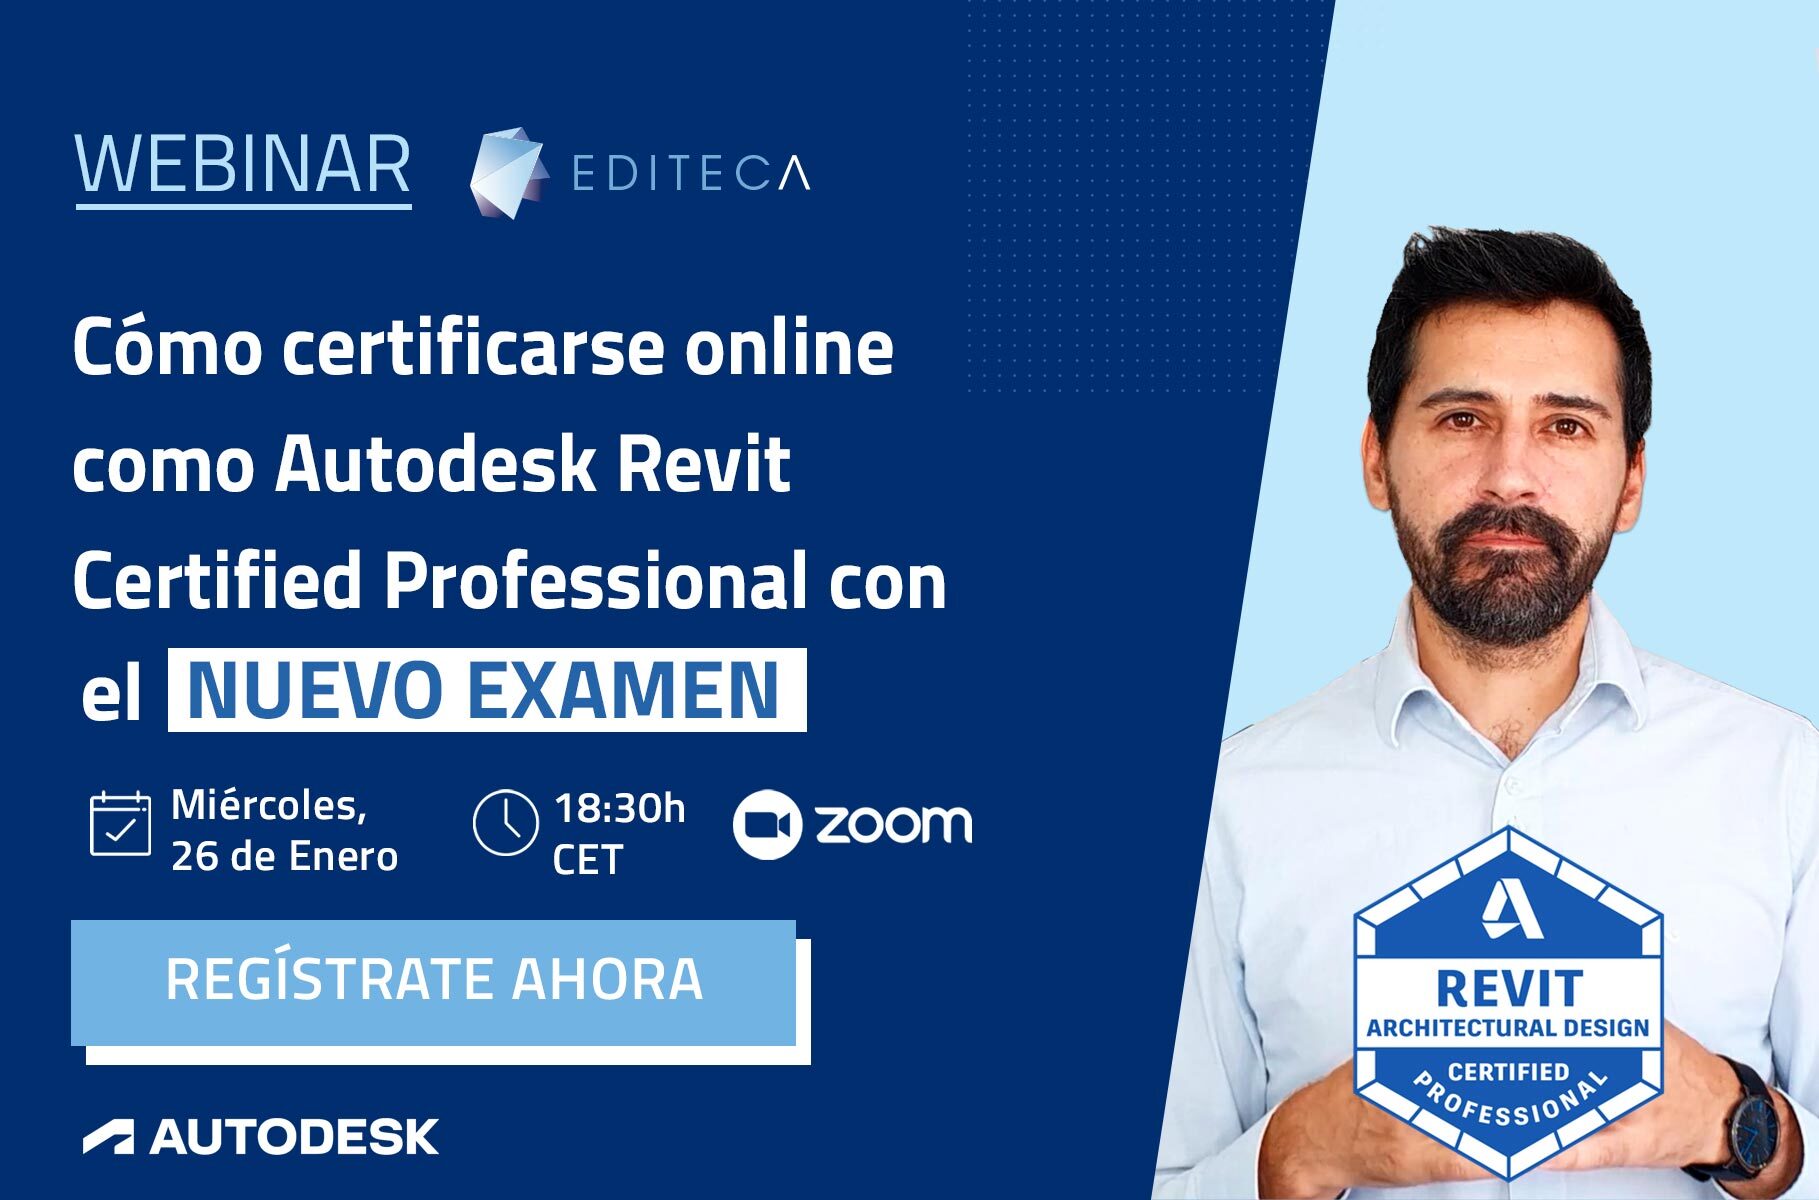 [Webinar] Cómo certificarse como Autodesk Revit Certified Professional con el nuevo examen online